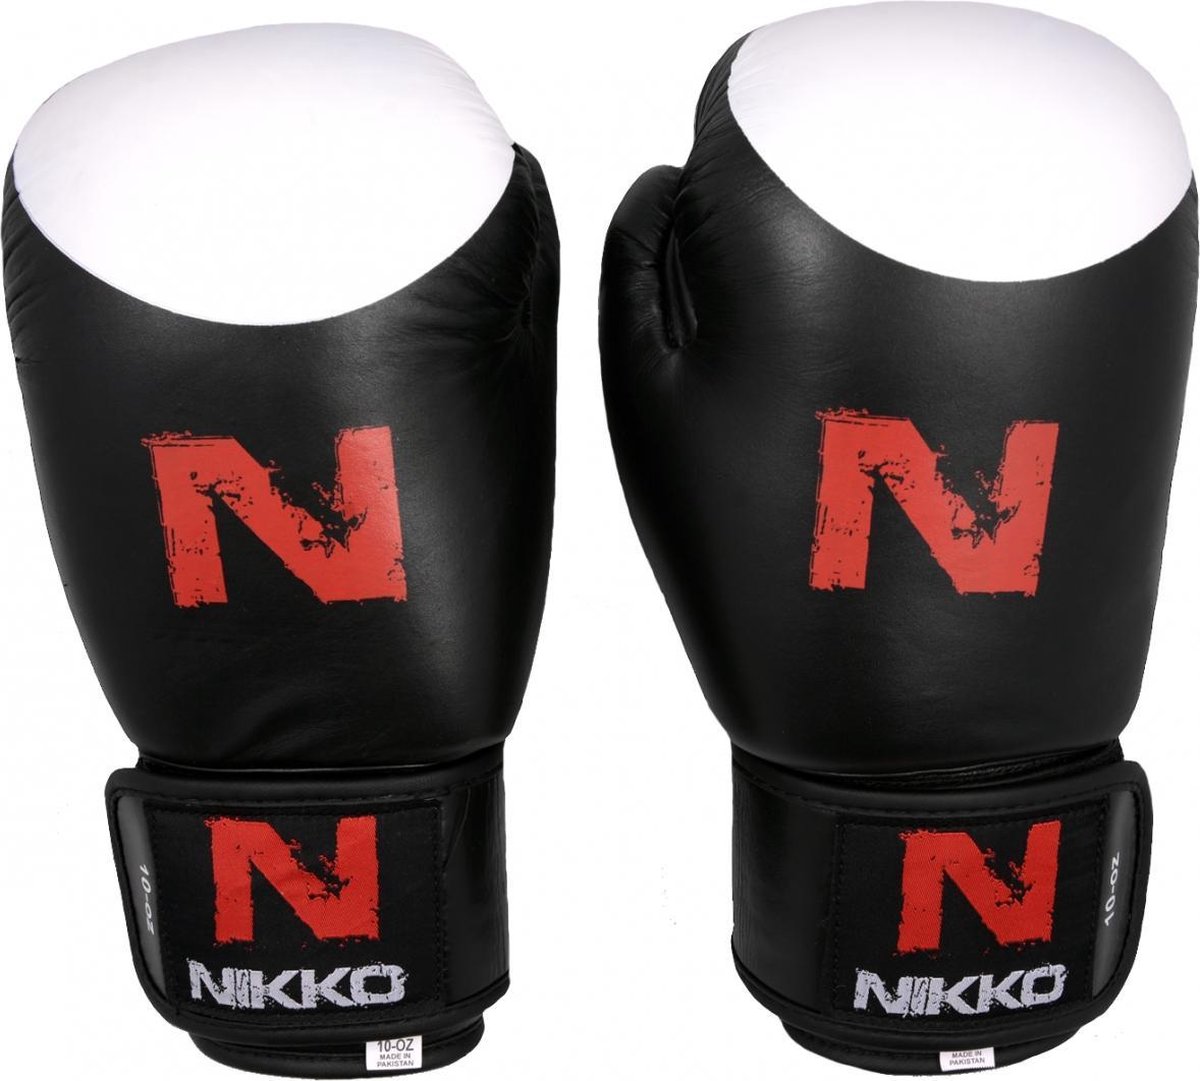 Nikko bokshandschoenen Target